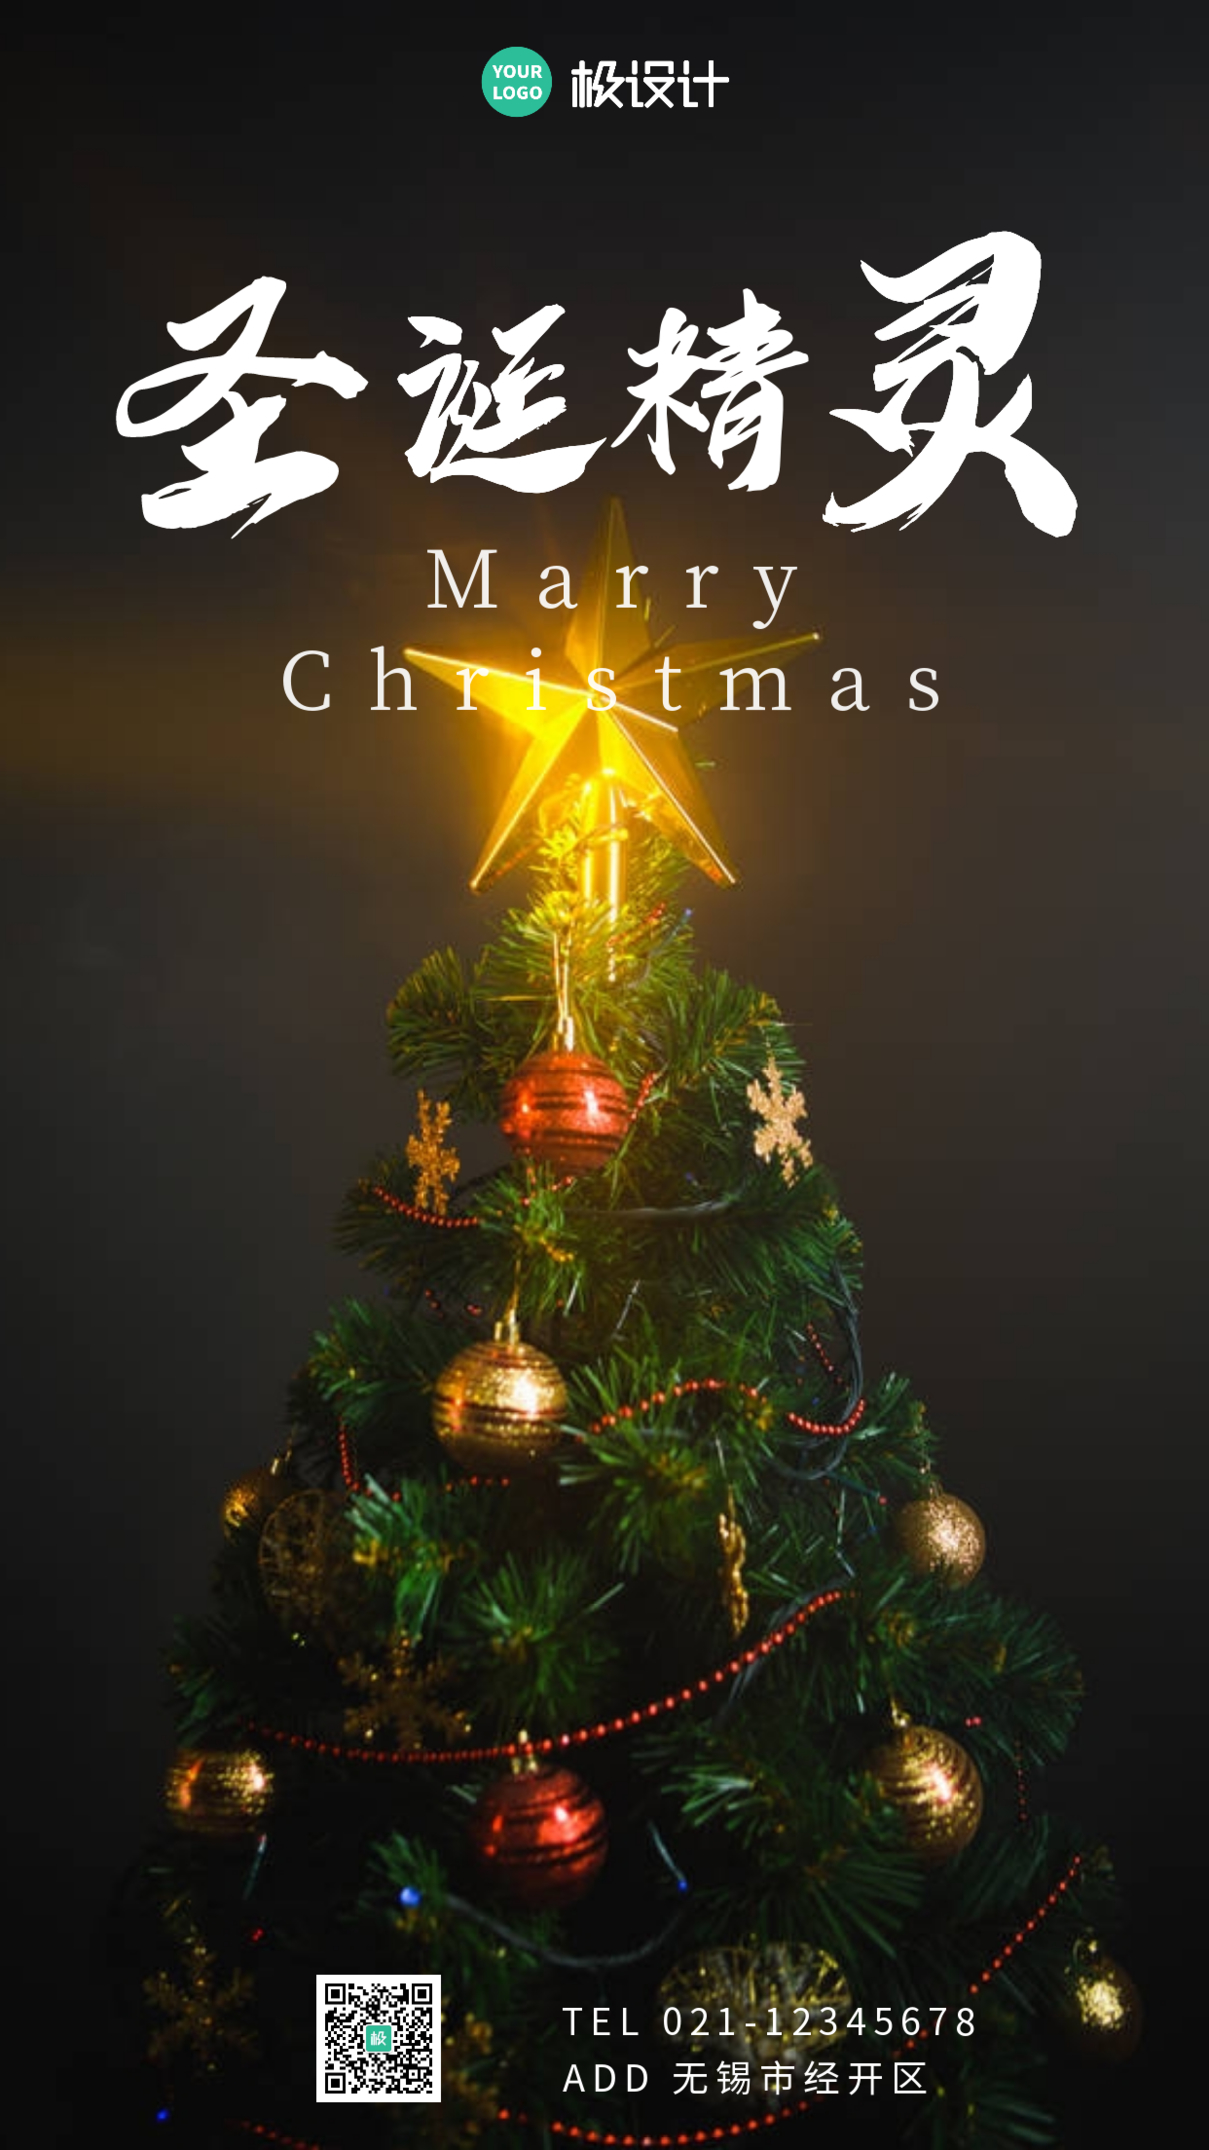 圣诞精灵创意广告传媒手机海报